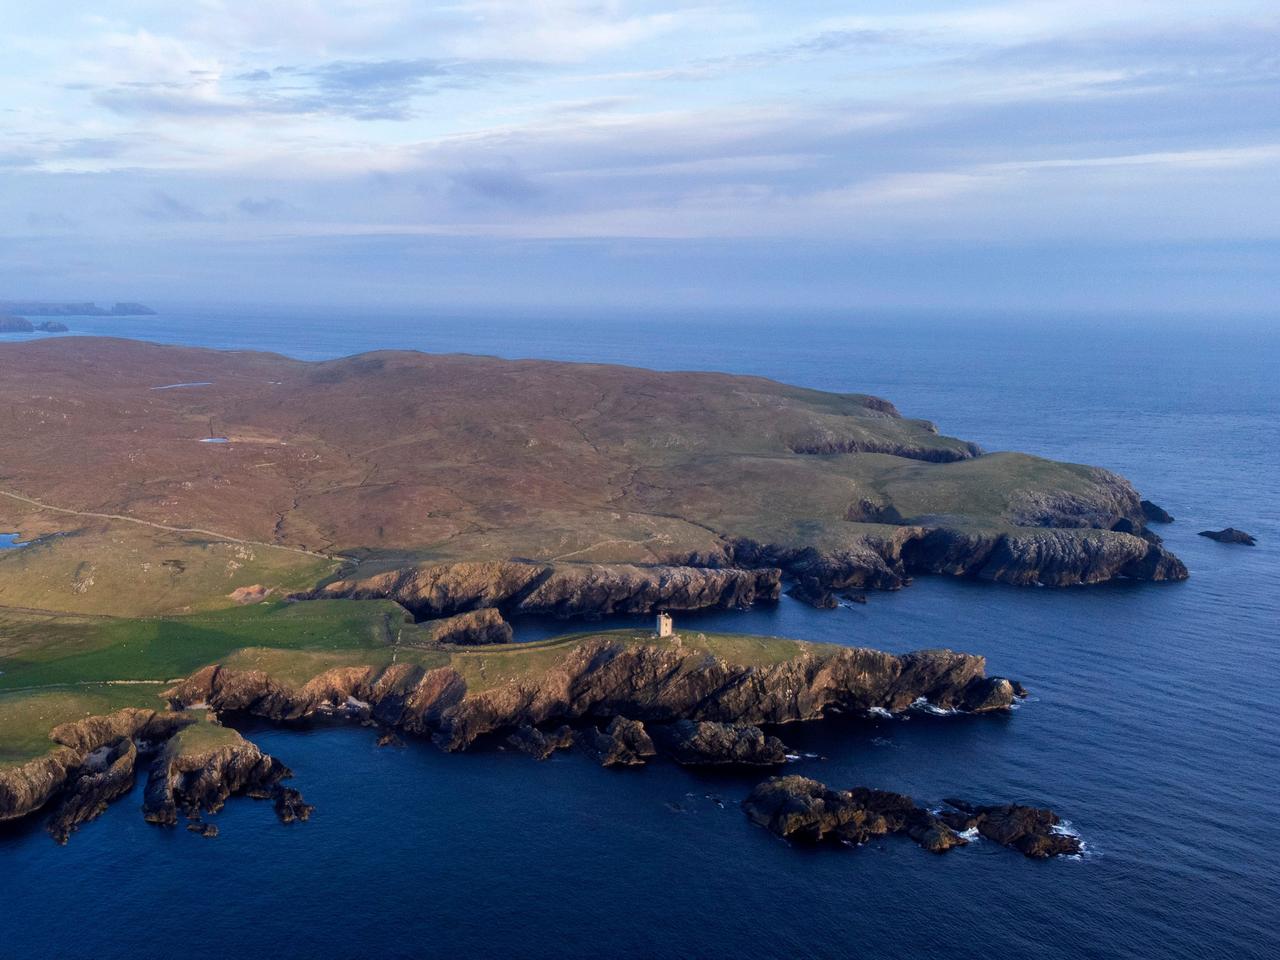 ヴァイラ島とは、スコットランド、シェトランド諸島にある面積約3平方kmの島だ。